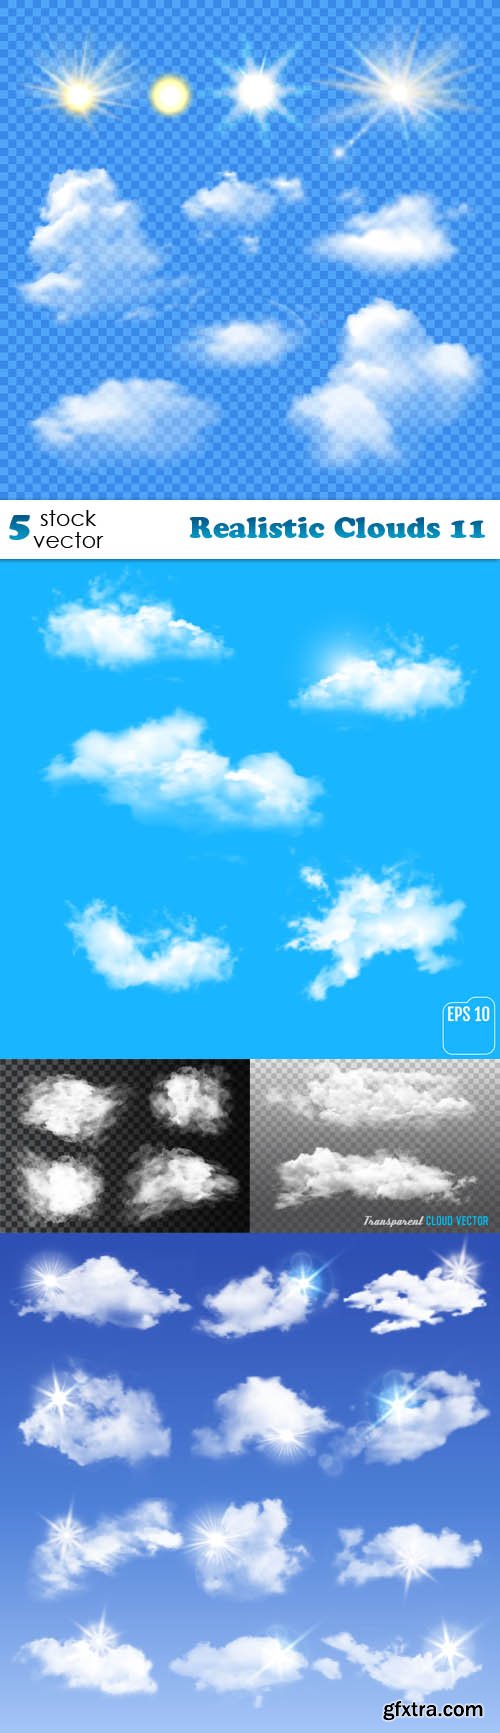 Vectors - Realistic Clouds 11